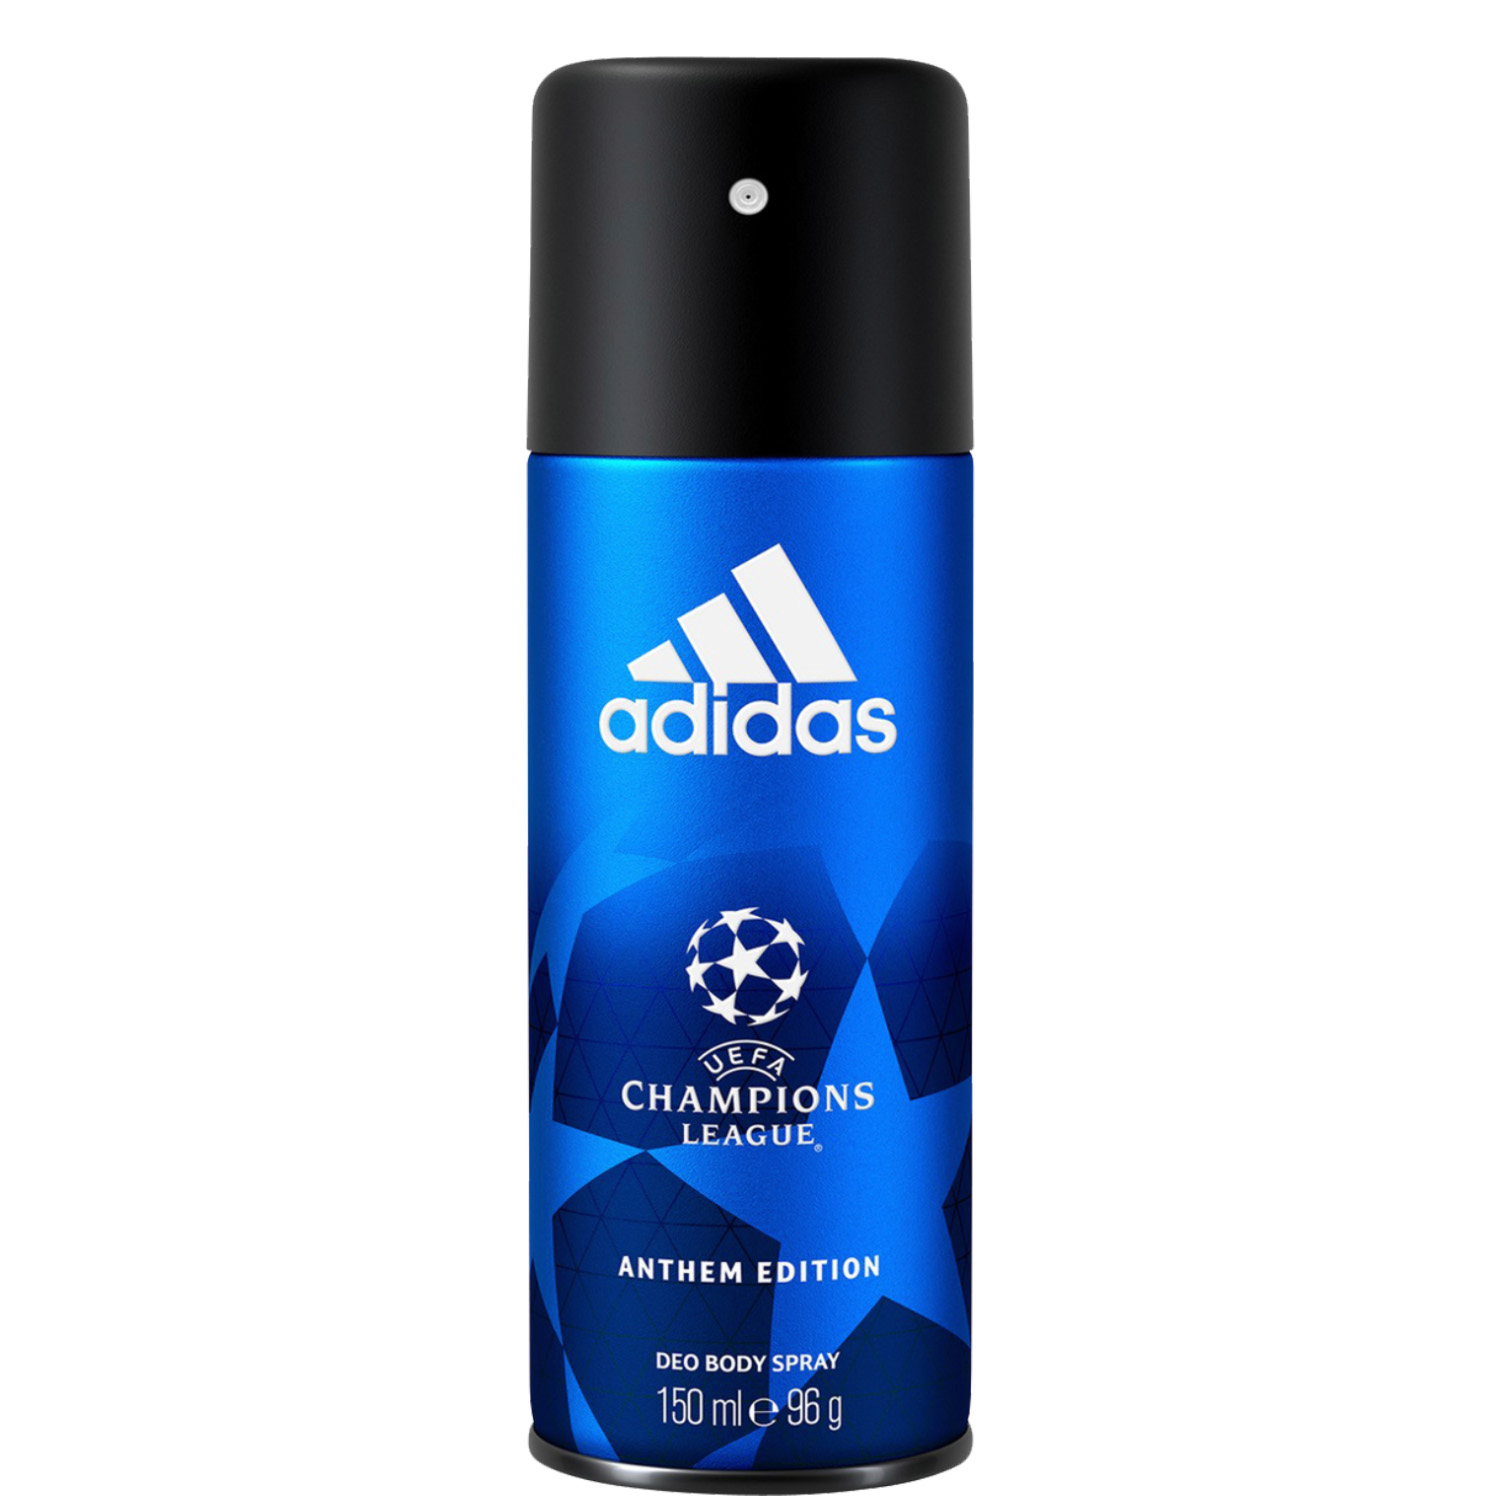 Adidas UEFA Champions League Anthem Edition Deodorant Body Spray 150ml